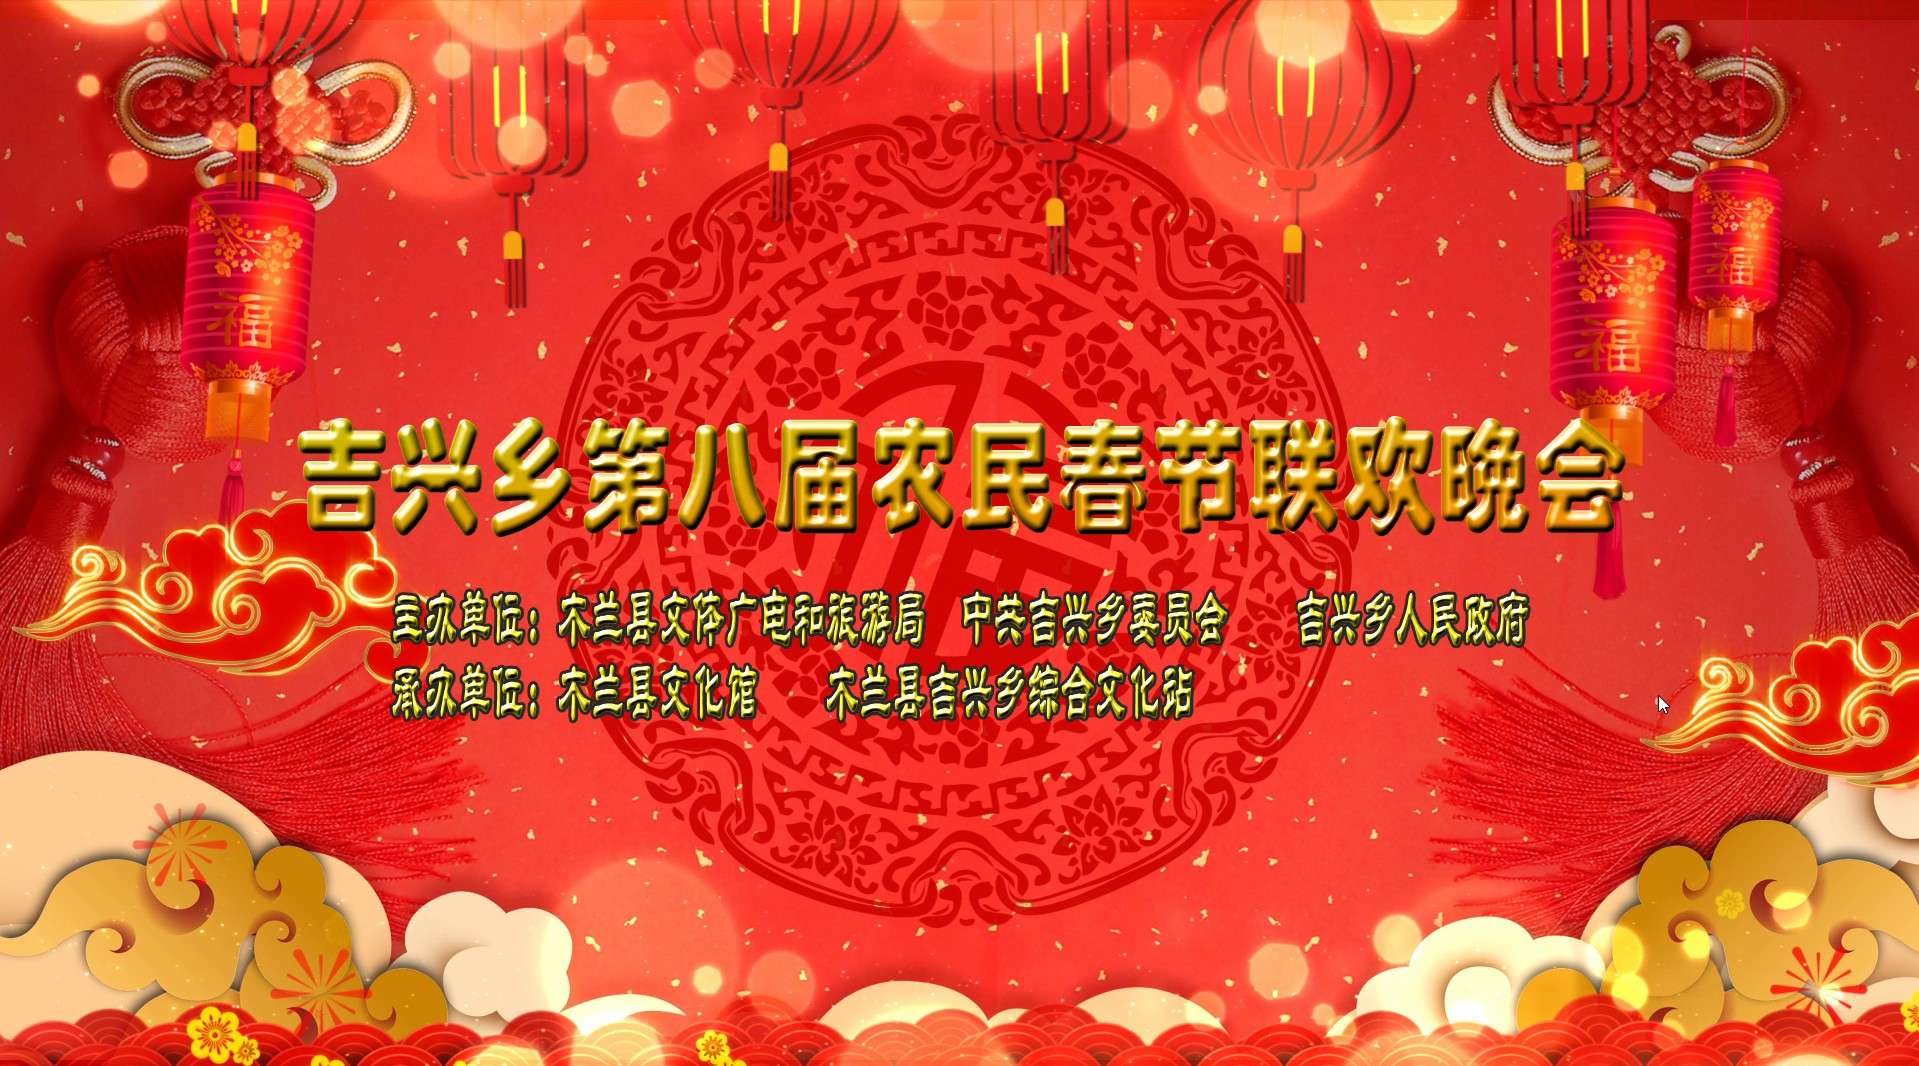 吉兴乡第八届农民春节联欢晚会